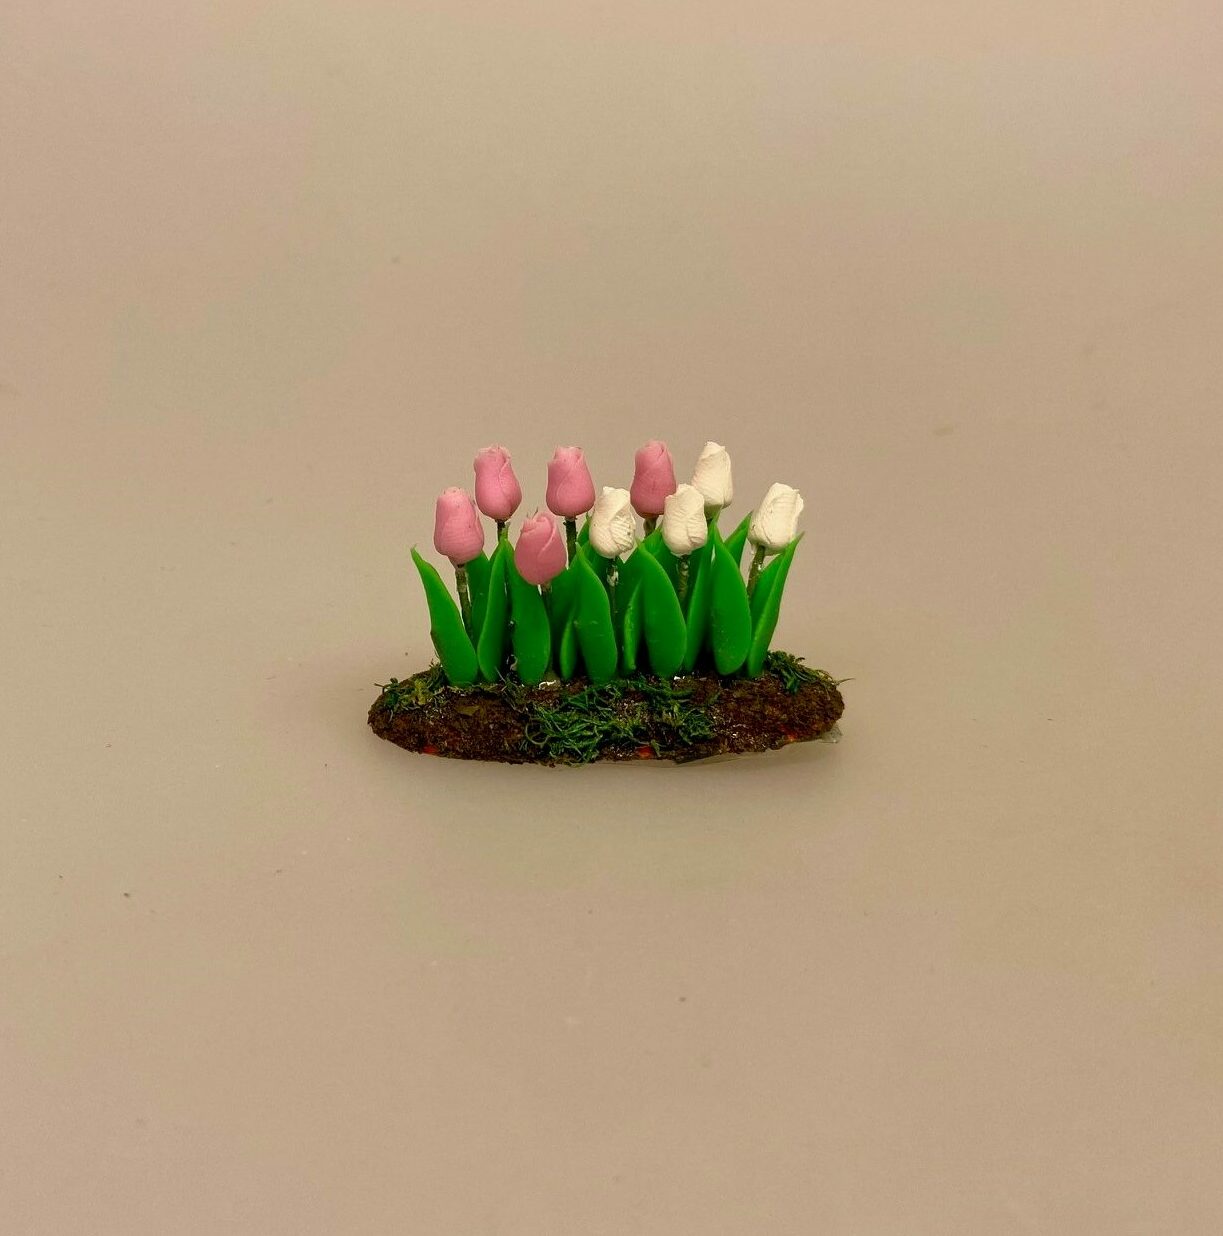 Miniature Bed med Tulipaner Hvid Rosa, 7068 v/P, påske, forår, forårsblomster, forårsbed, tulipanbed, biti, ribe, gartner, planteskole, have, havearbejde, biti, ribe, tulipanfest, løgplanter, blomsterløg,